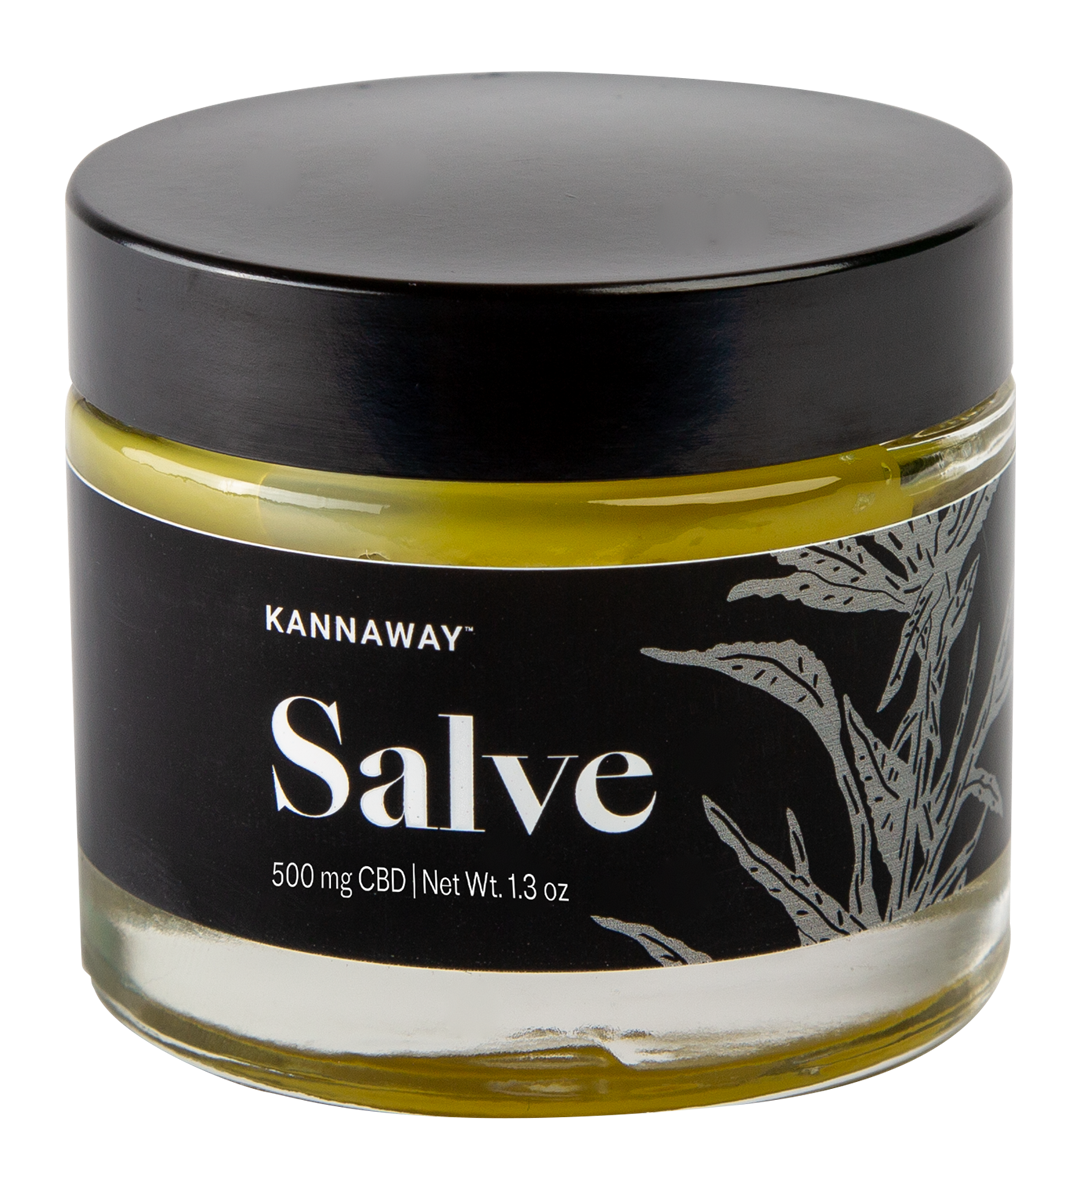 Kannaway Salve-Eine Revolution in der Hautpflege-salbe mit CBD - Premium Kosmetik from Kannaway - Just $55! Shop now at Antidotumaqua